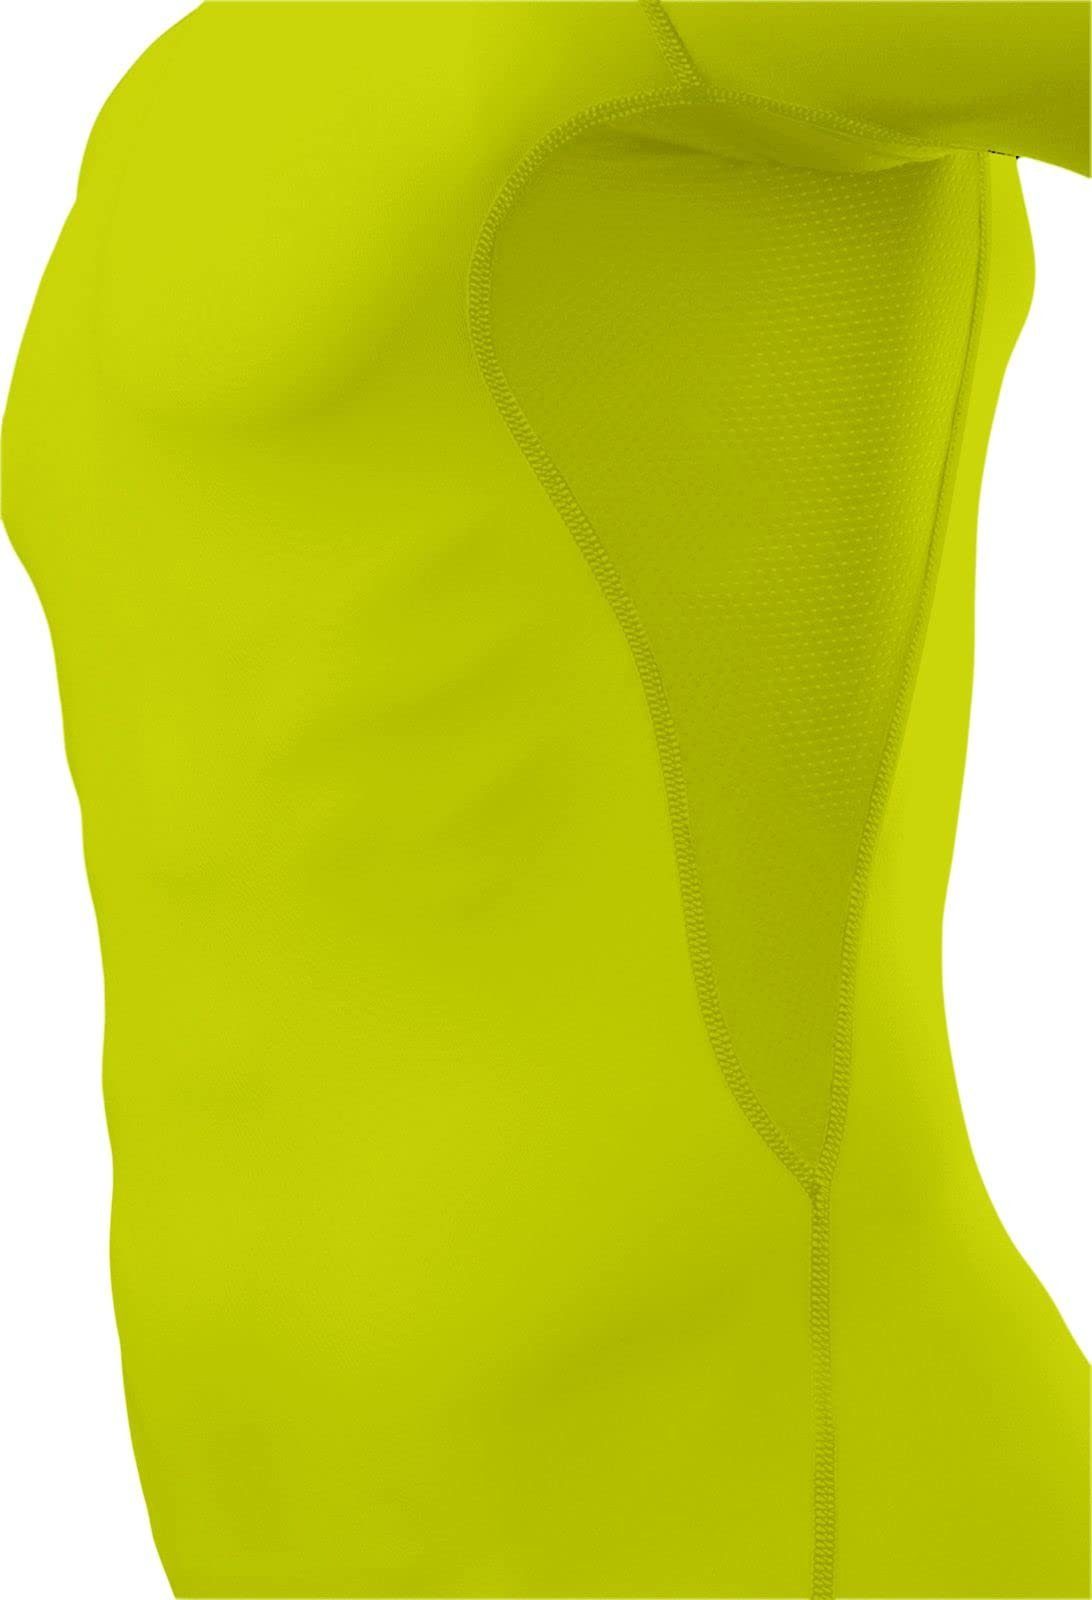 Herren elastisch Grün HyperFusion Licht TCA TCA kurzärmlig, - Sportshirt, Funktionsunterhemd